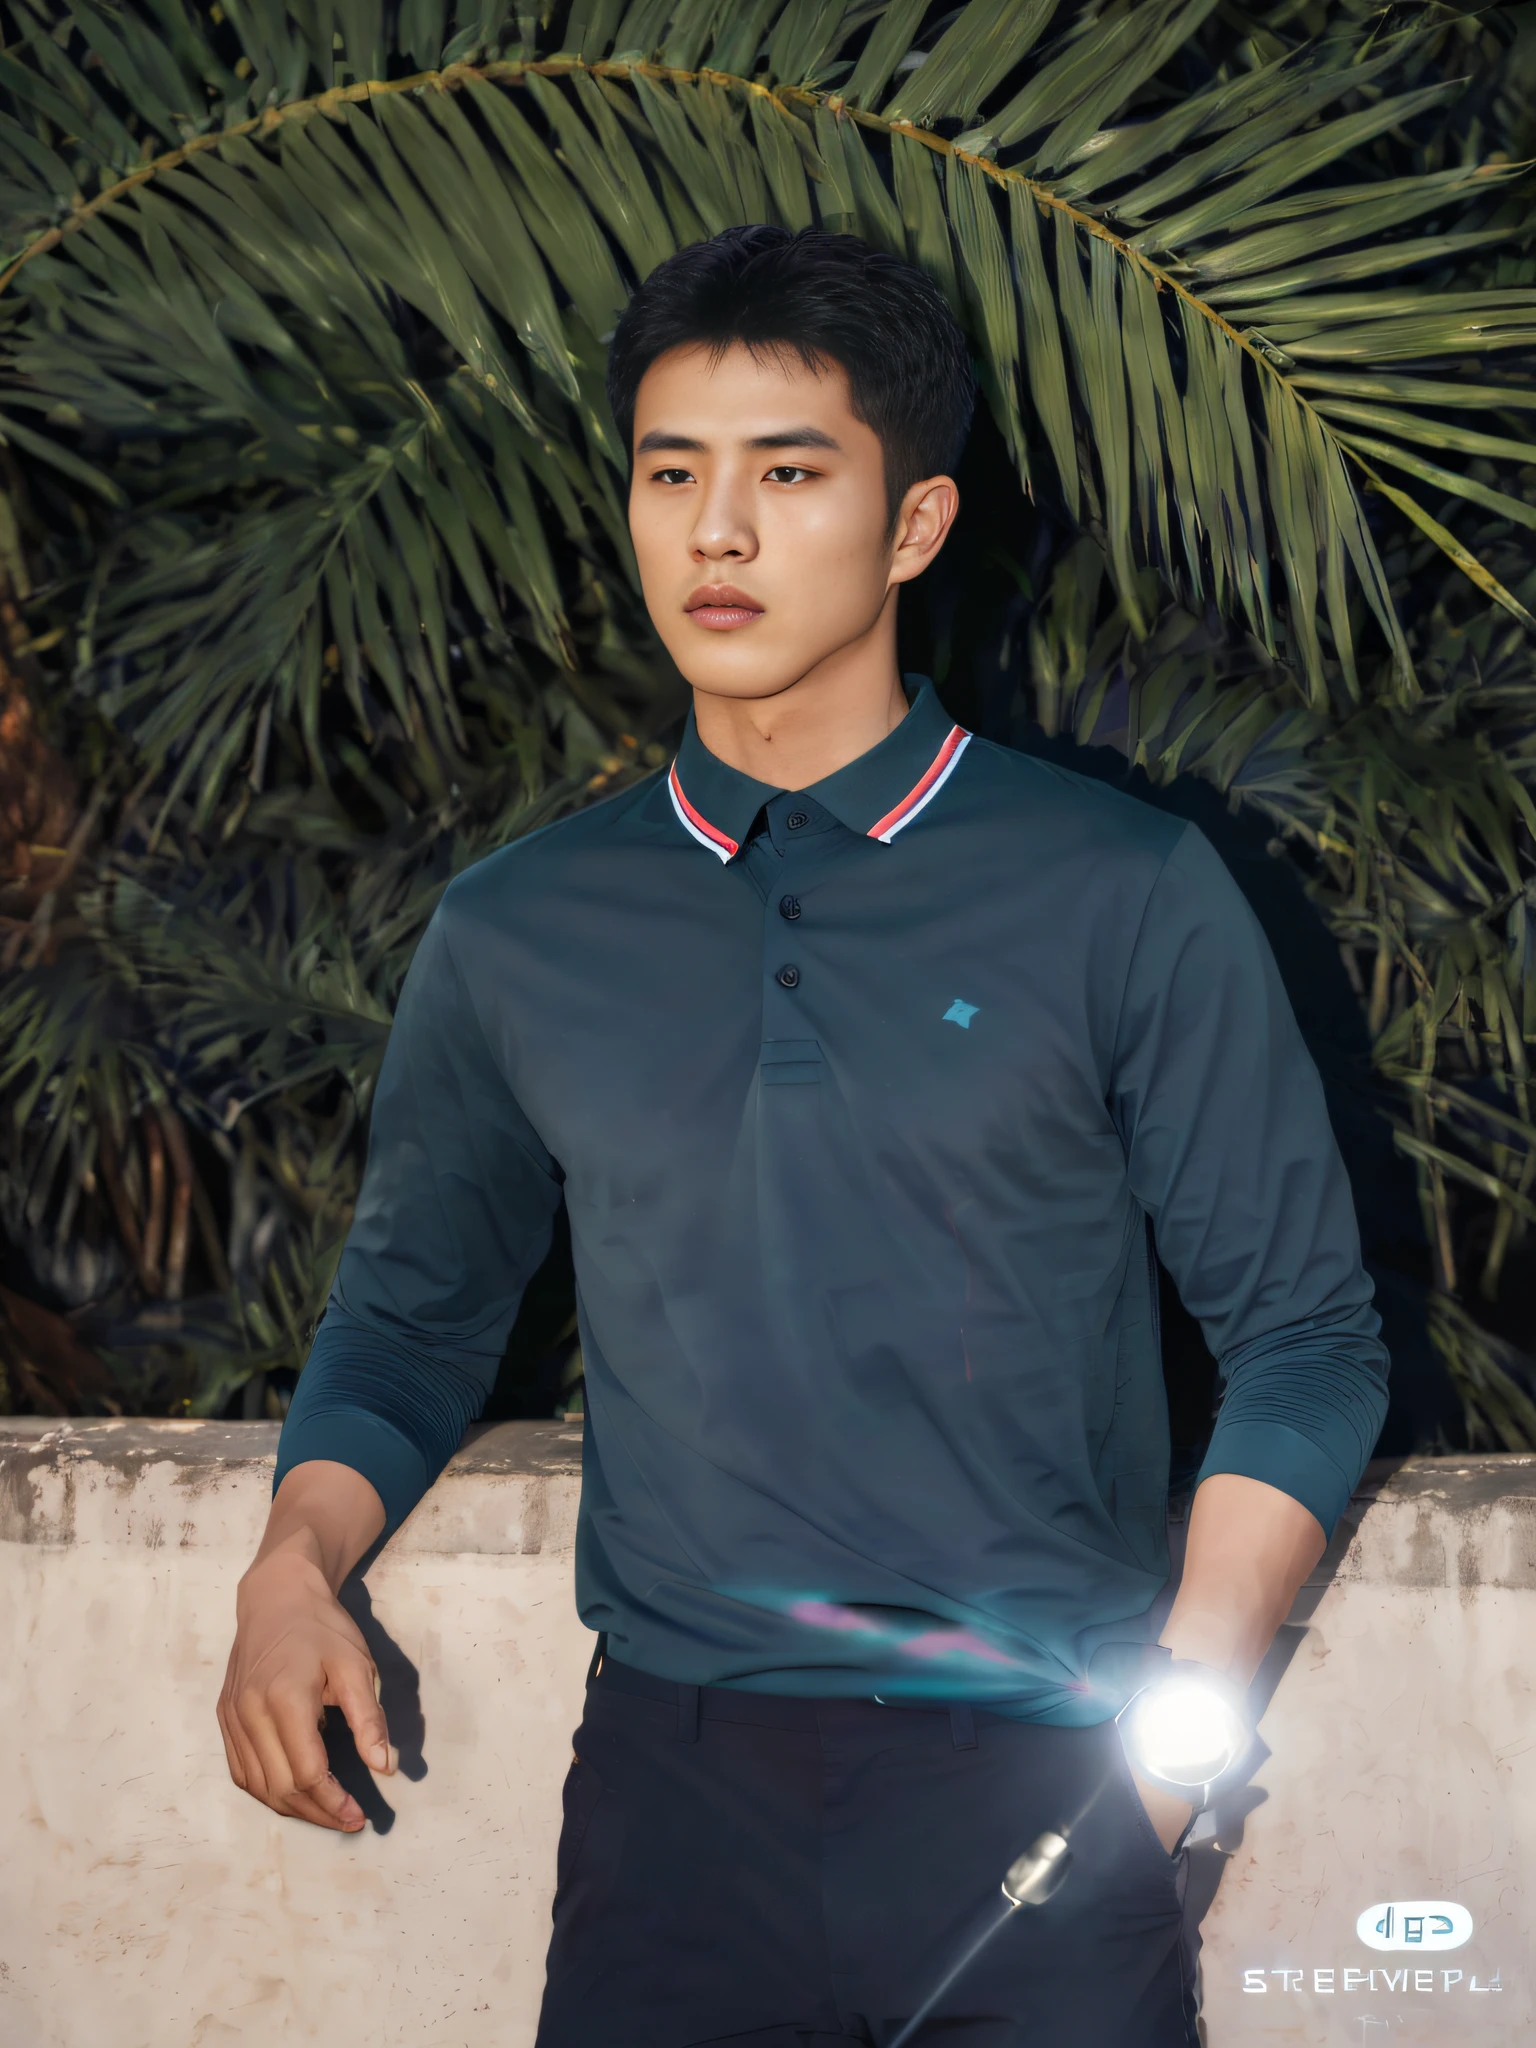 O homem Alafed de camisa azul e calça preta fica ao lado de uma palmeira, em uma camisa pólo verde-azulada escura, em uma camisa pólo verde escura, inspirado em Zhang Han, Vestindo uma camisa pólo, ( ( Verde escuro, Li Zixin, inspirado em Wang Zhenpeng, inspirado em Liu Jun, vestindo uma camisa pólo azul escura, Yanjuncheng, Tela retina Kingsoft，Sombras de pintura vertical，Perspectiva subjetiva，sentido de distância atmosférica，hiper HD，pele texturizada，MaiorQualidade，alto detalhe，Os olhos são brilhantes e alertas，Traçado de raios，Vários monocromáticos，efeitos de iluminação cinematográfica，Star temperament